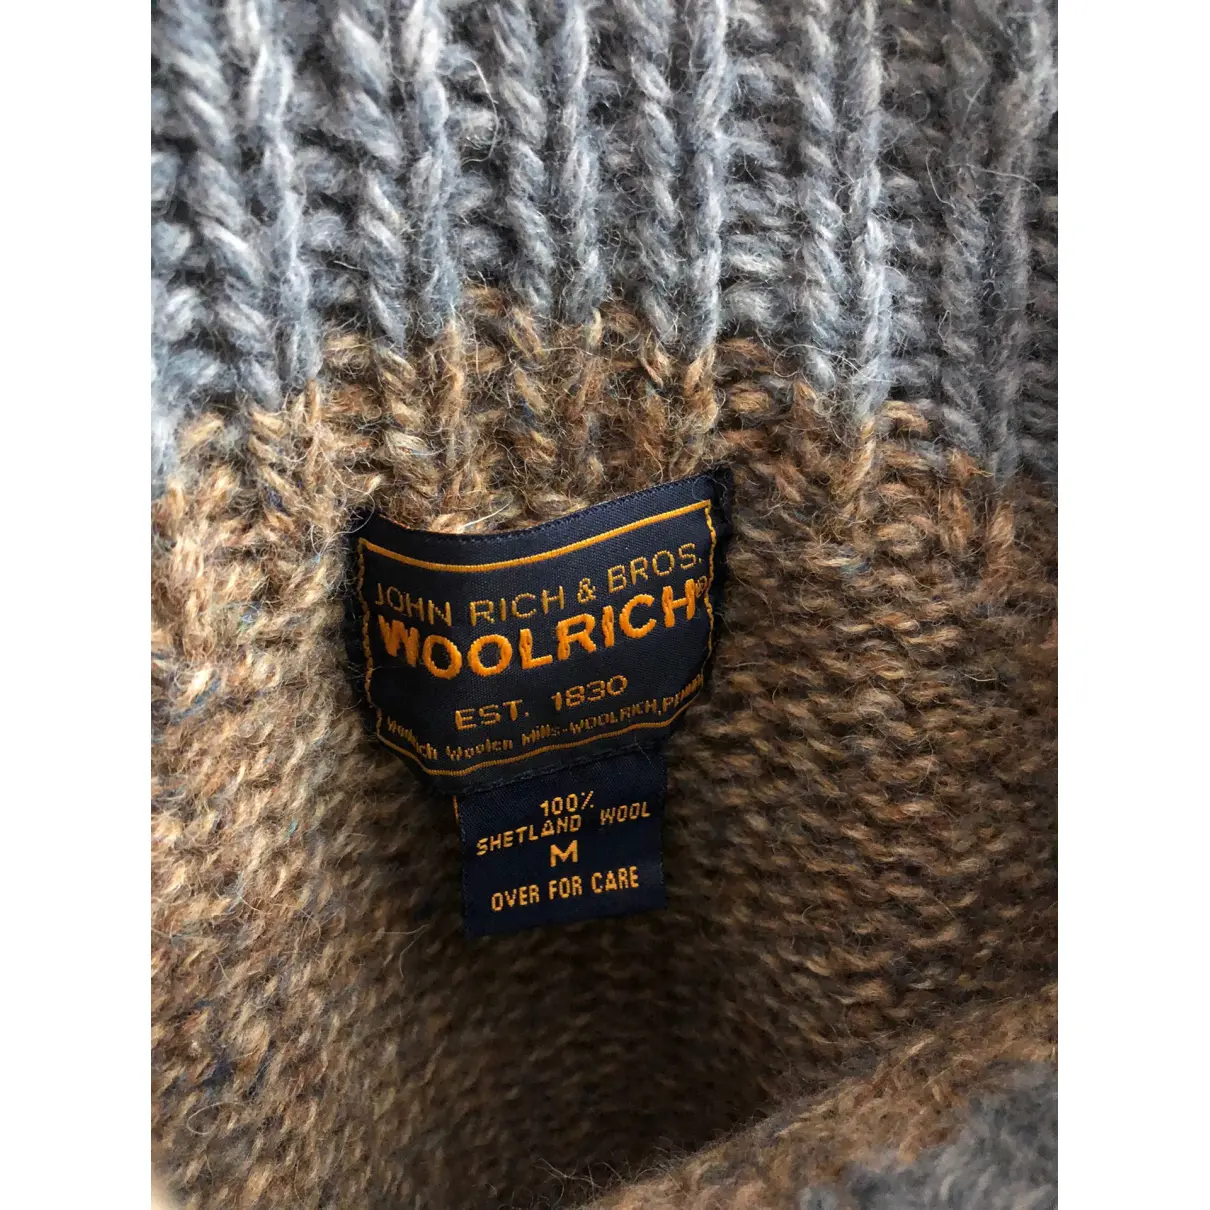 Buy Woolrich Wool knitwear online